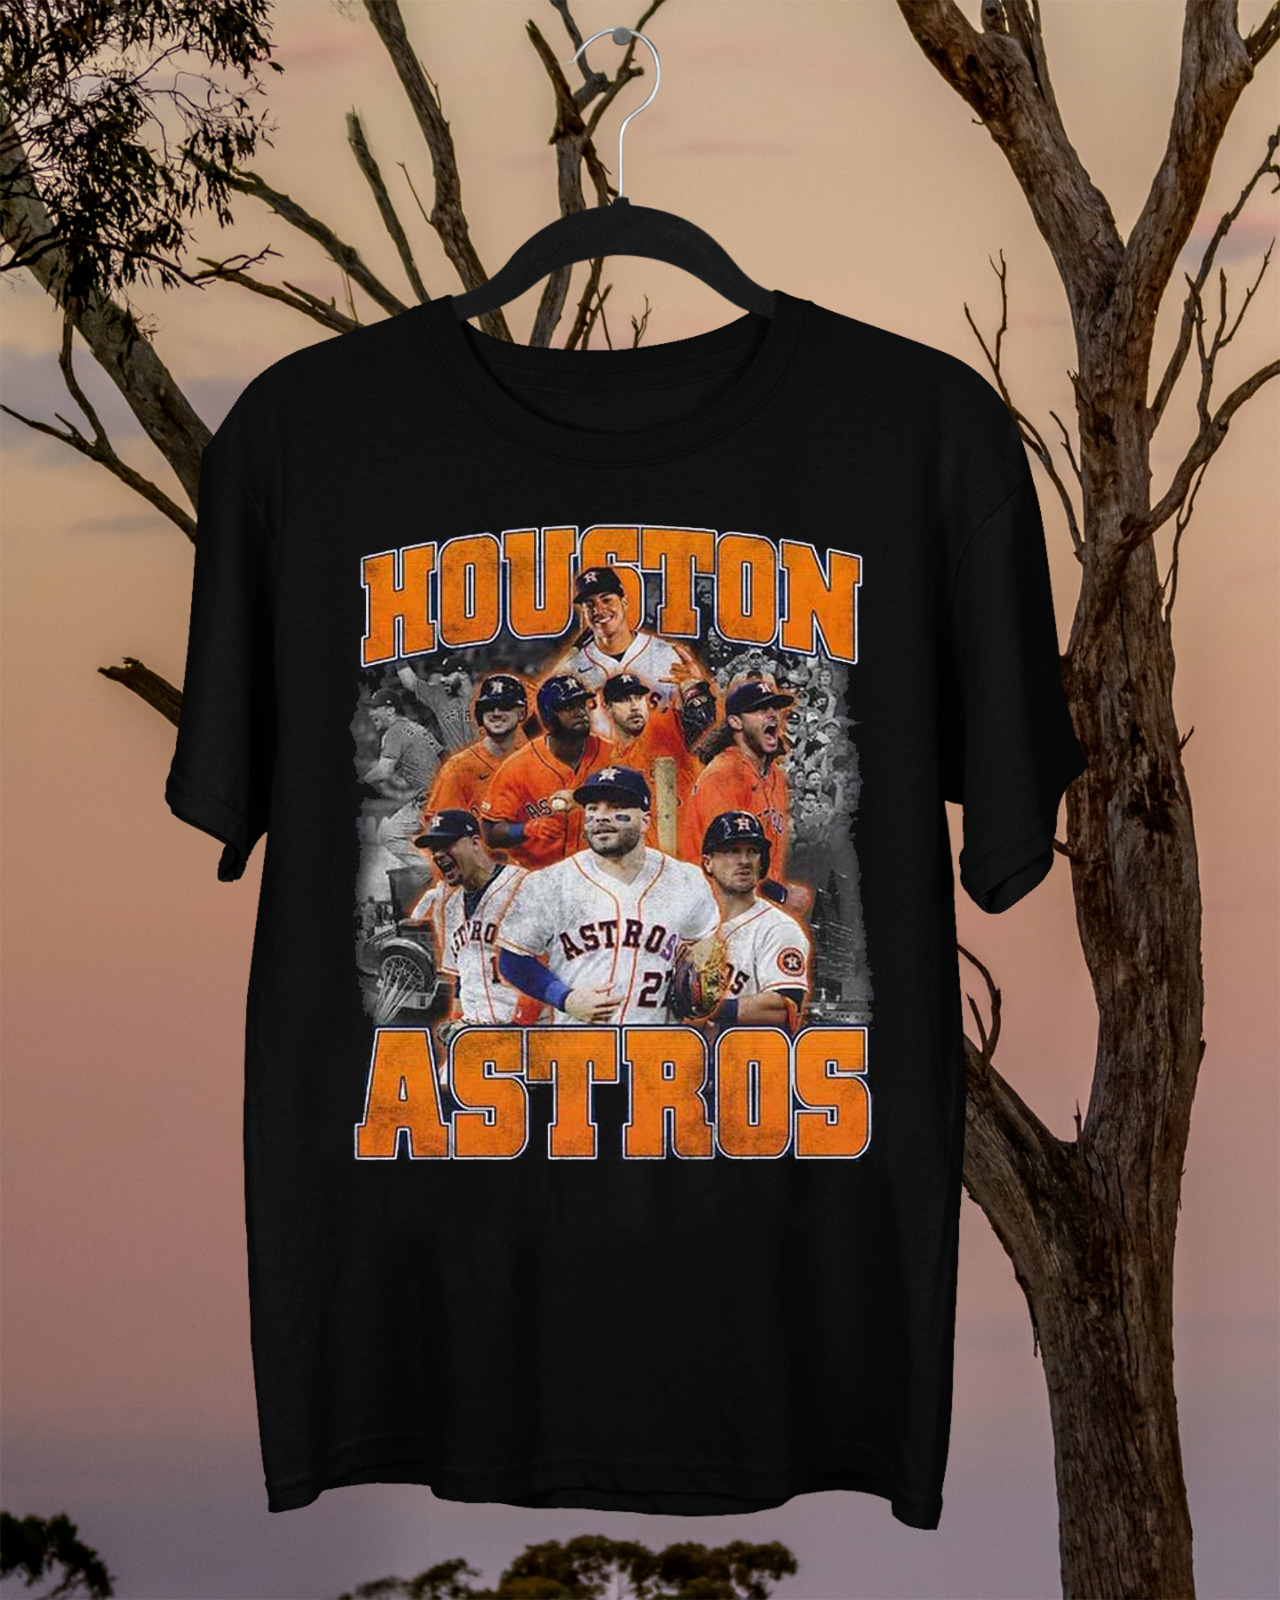 Houston Astros Vintage 2022 City Houston Astros Team T Shirt S-3xl Size Up To 5xl